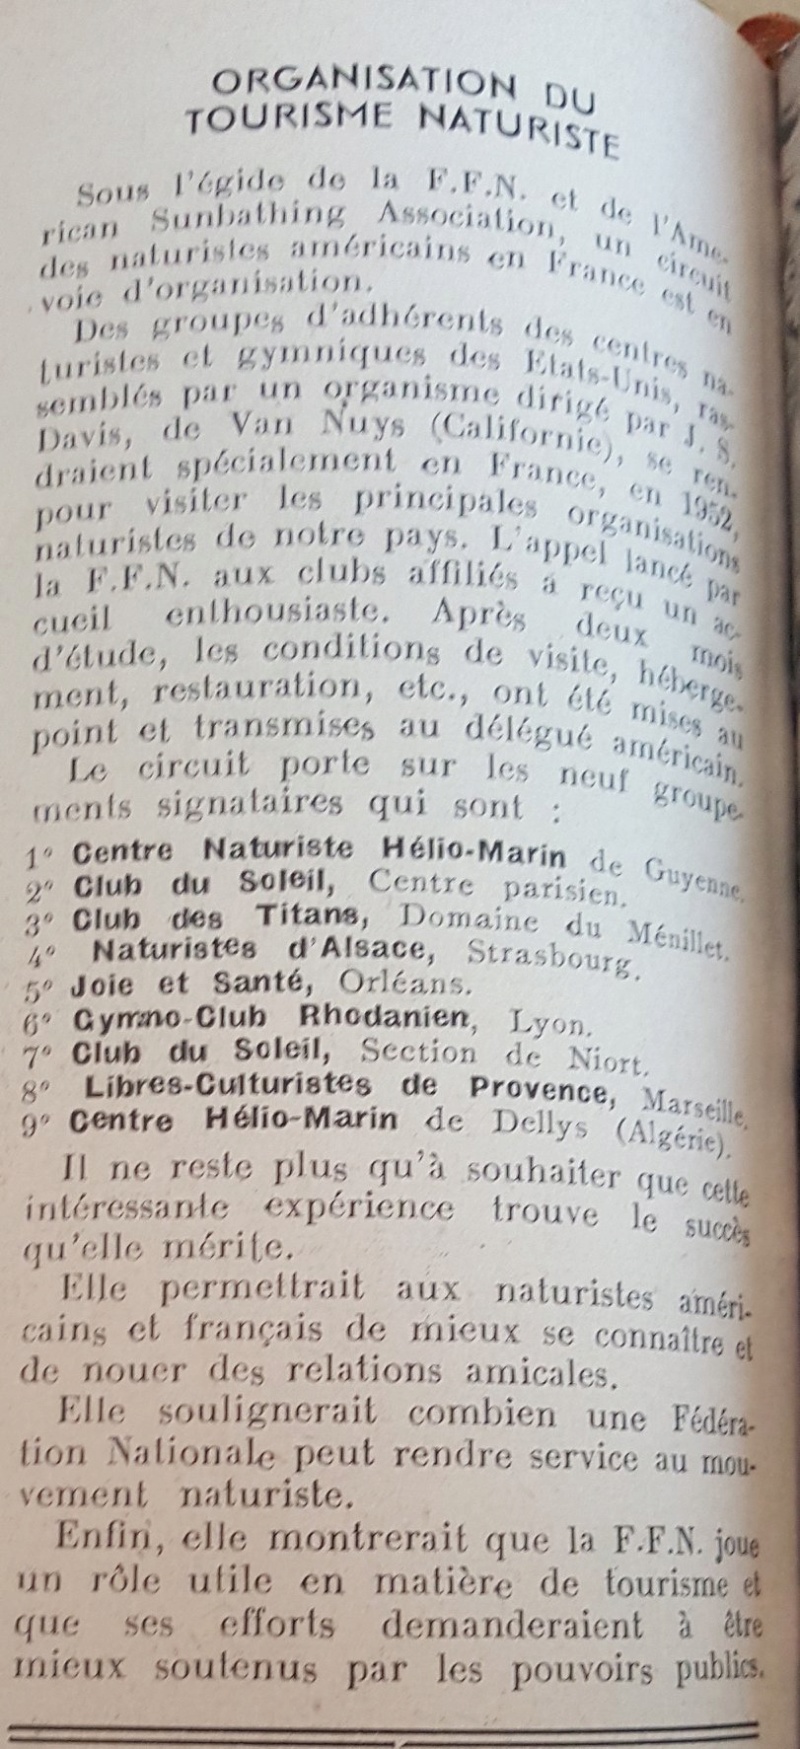 Histoire du naturisme dans la région marseillaise  - Page 3 72099310